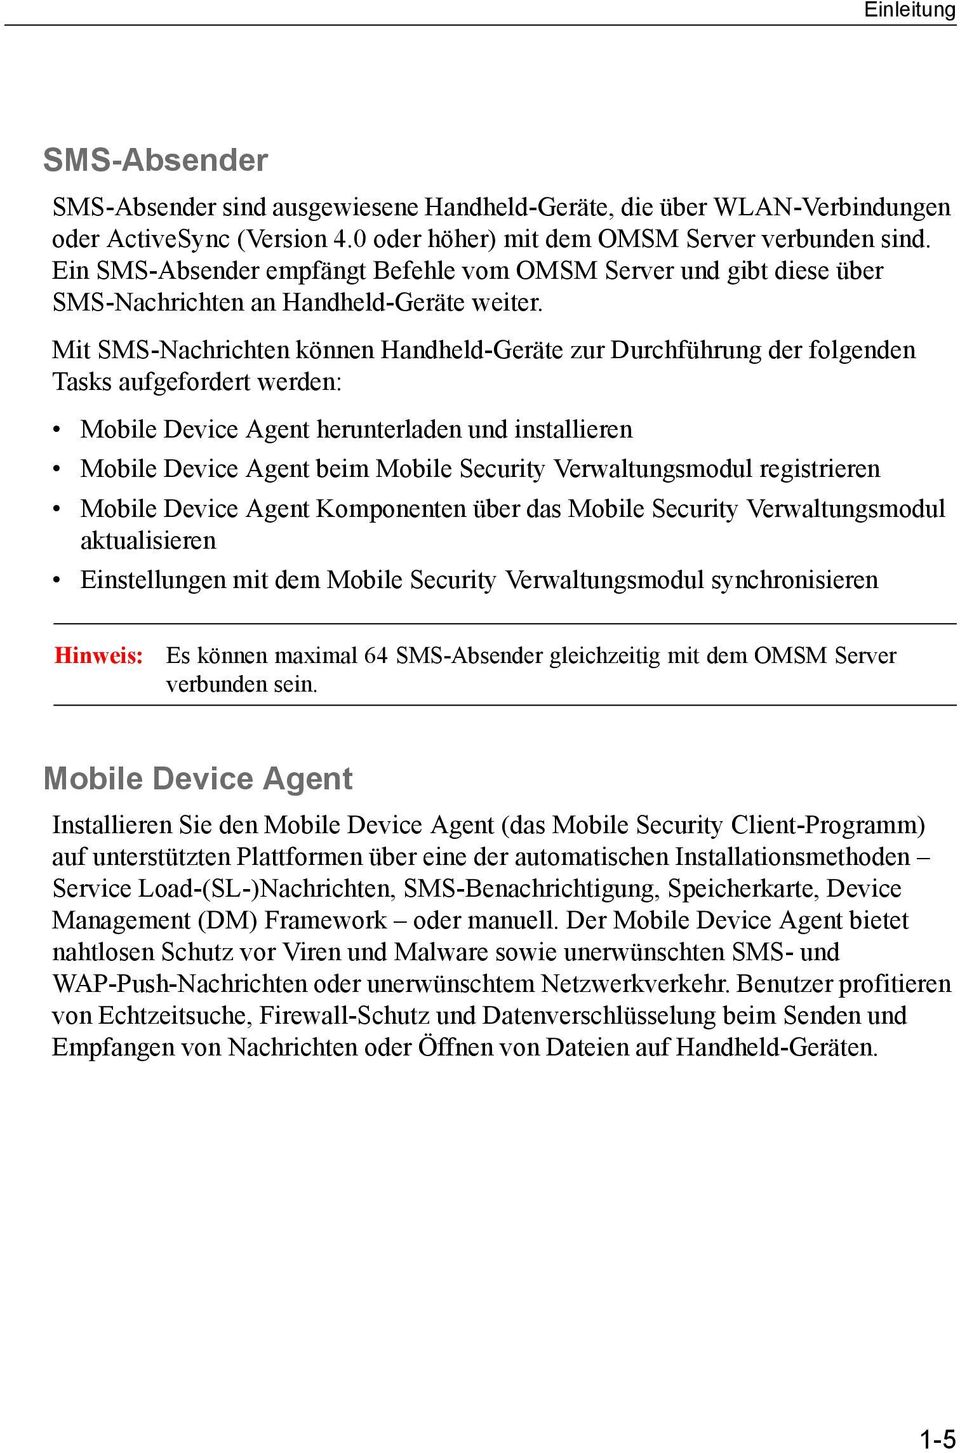 Mit SMS-Nachrichten können Handheld-Geräte zur Durchführung der folgenden Tasks aufgefordert werden: Mobile Device Agent herunterladen und installieren Mobile Device Agent beim Mobile Security